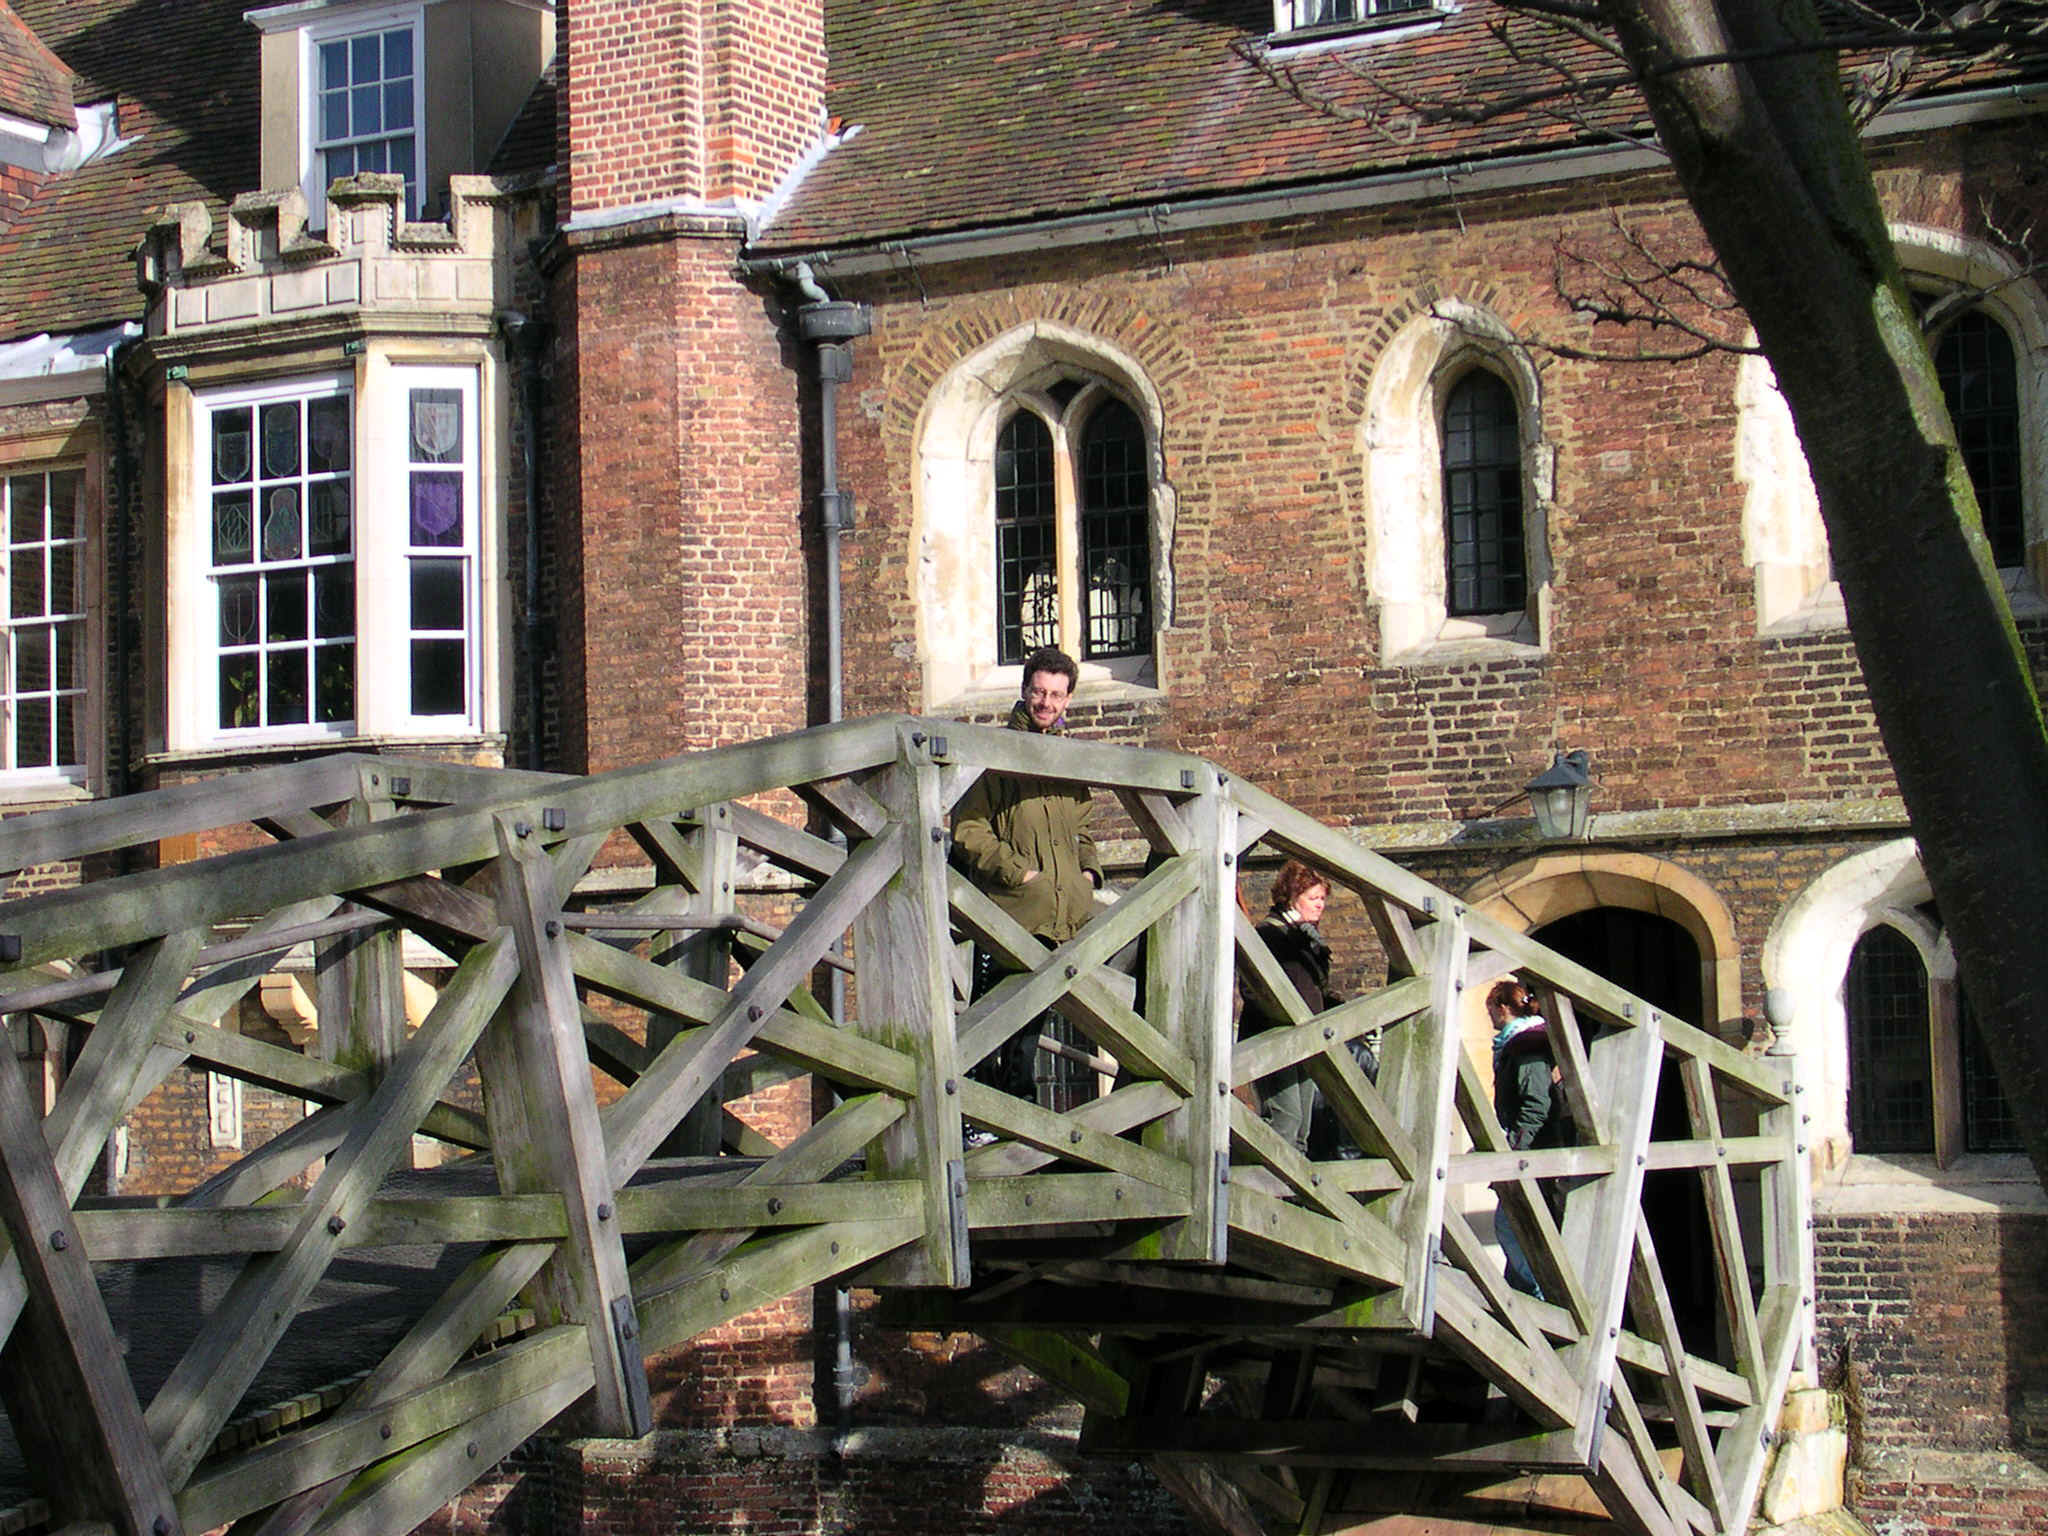 Mathematical Bridge at Queen's College (Cambridge, UK)